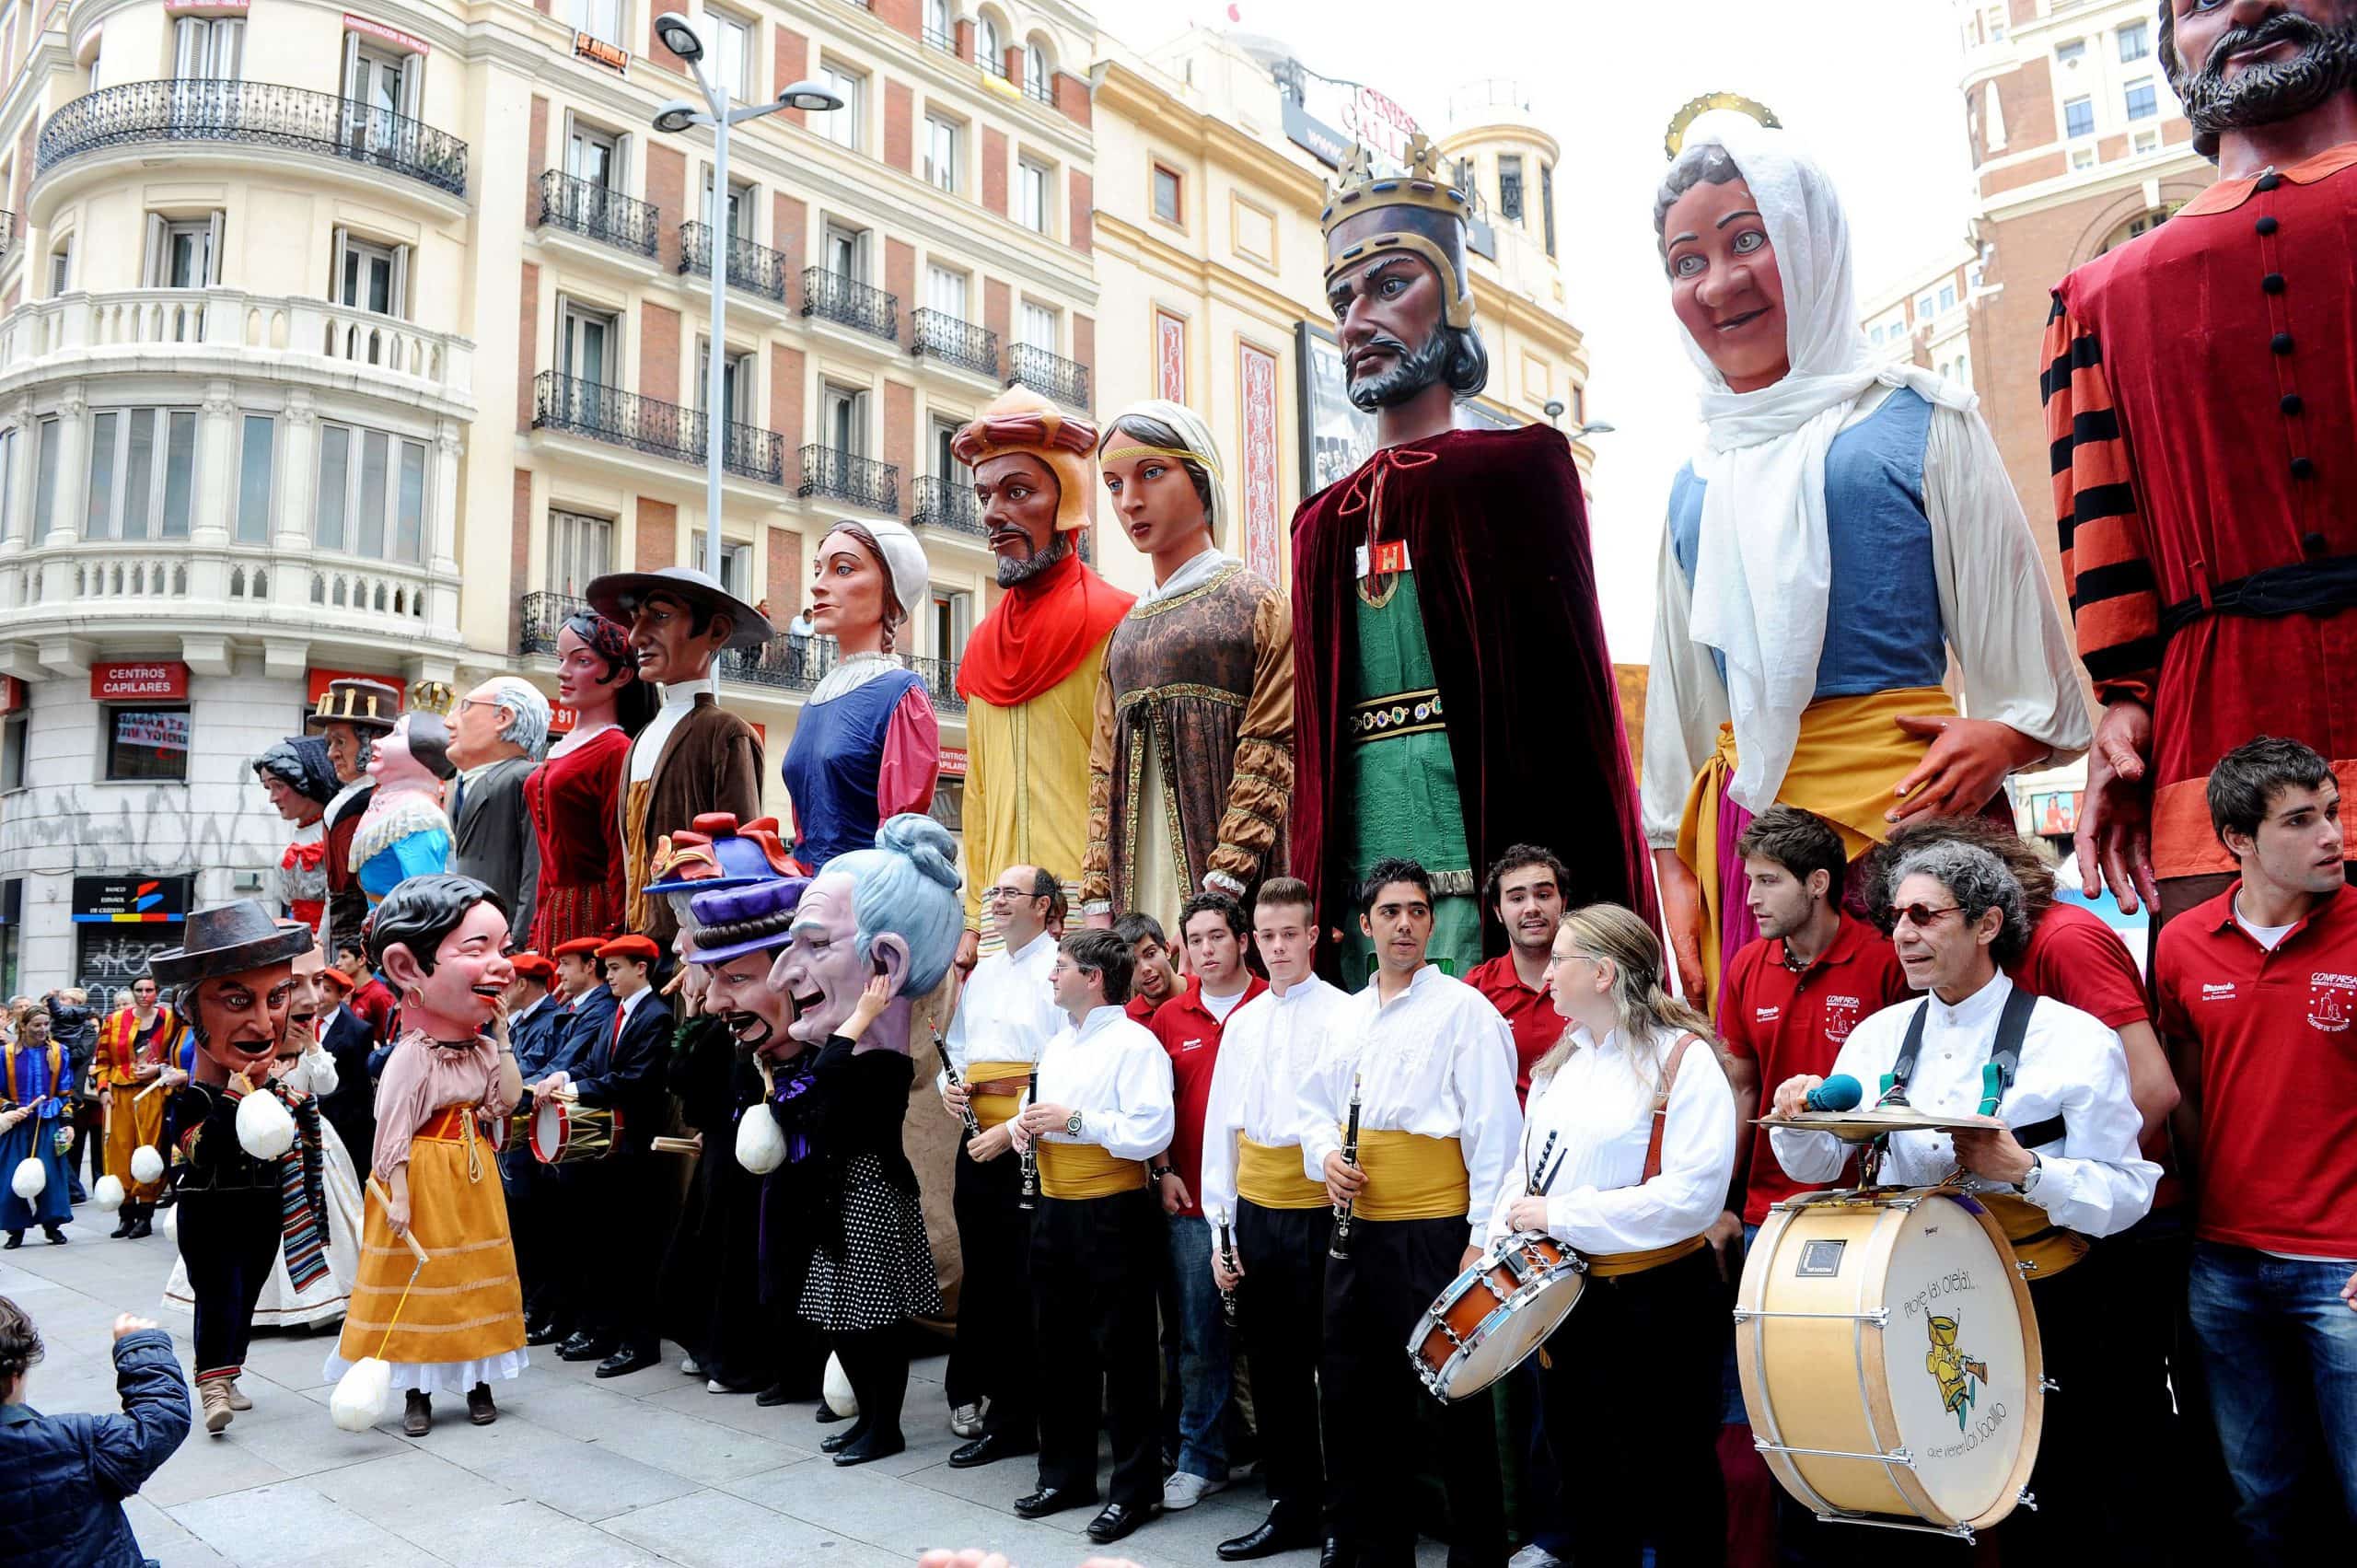 soporte Bienes diversos Chillido Fiestas de San Isidro 2019 en Madrid - Programación y Dónde Alojarse